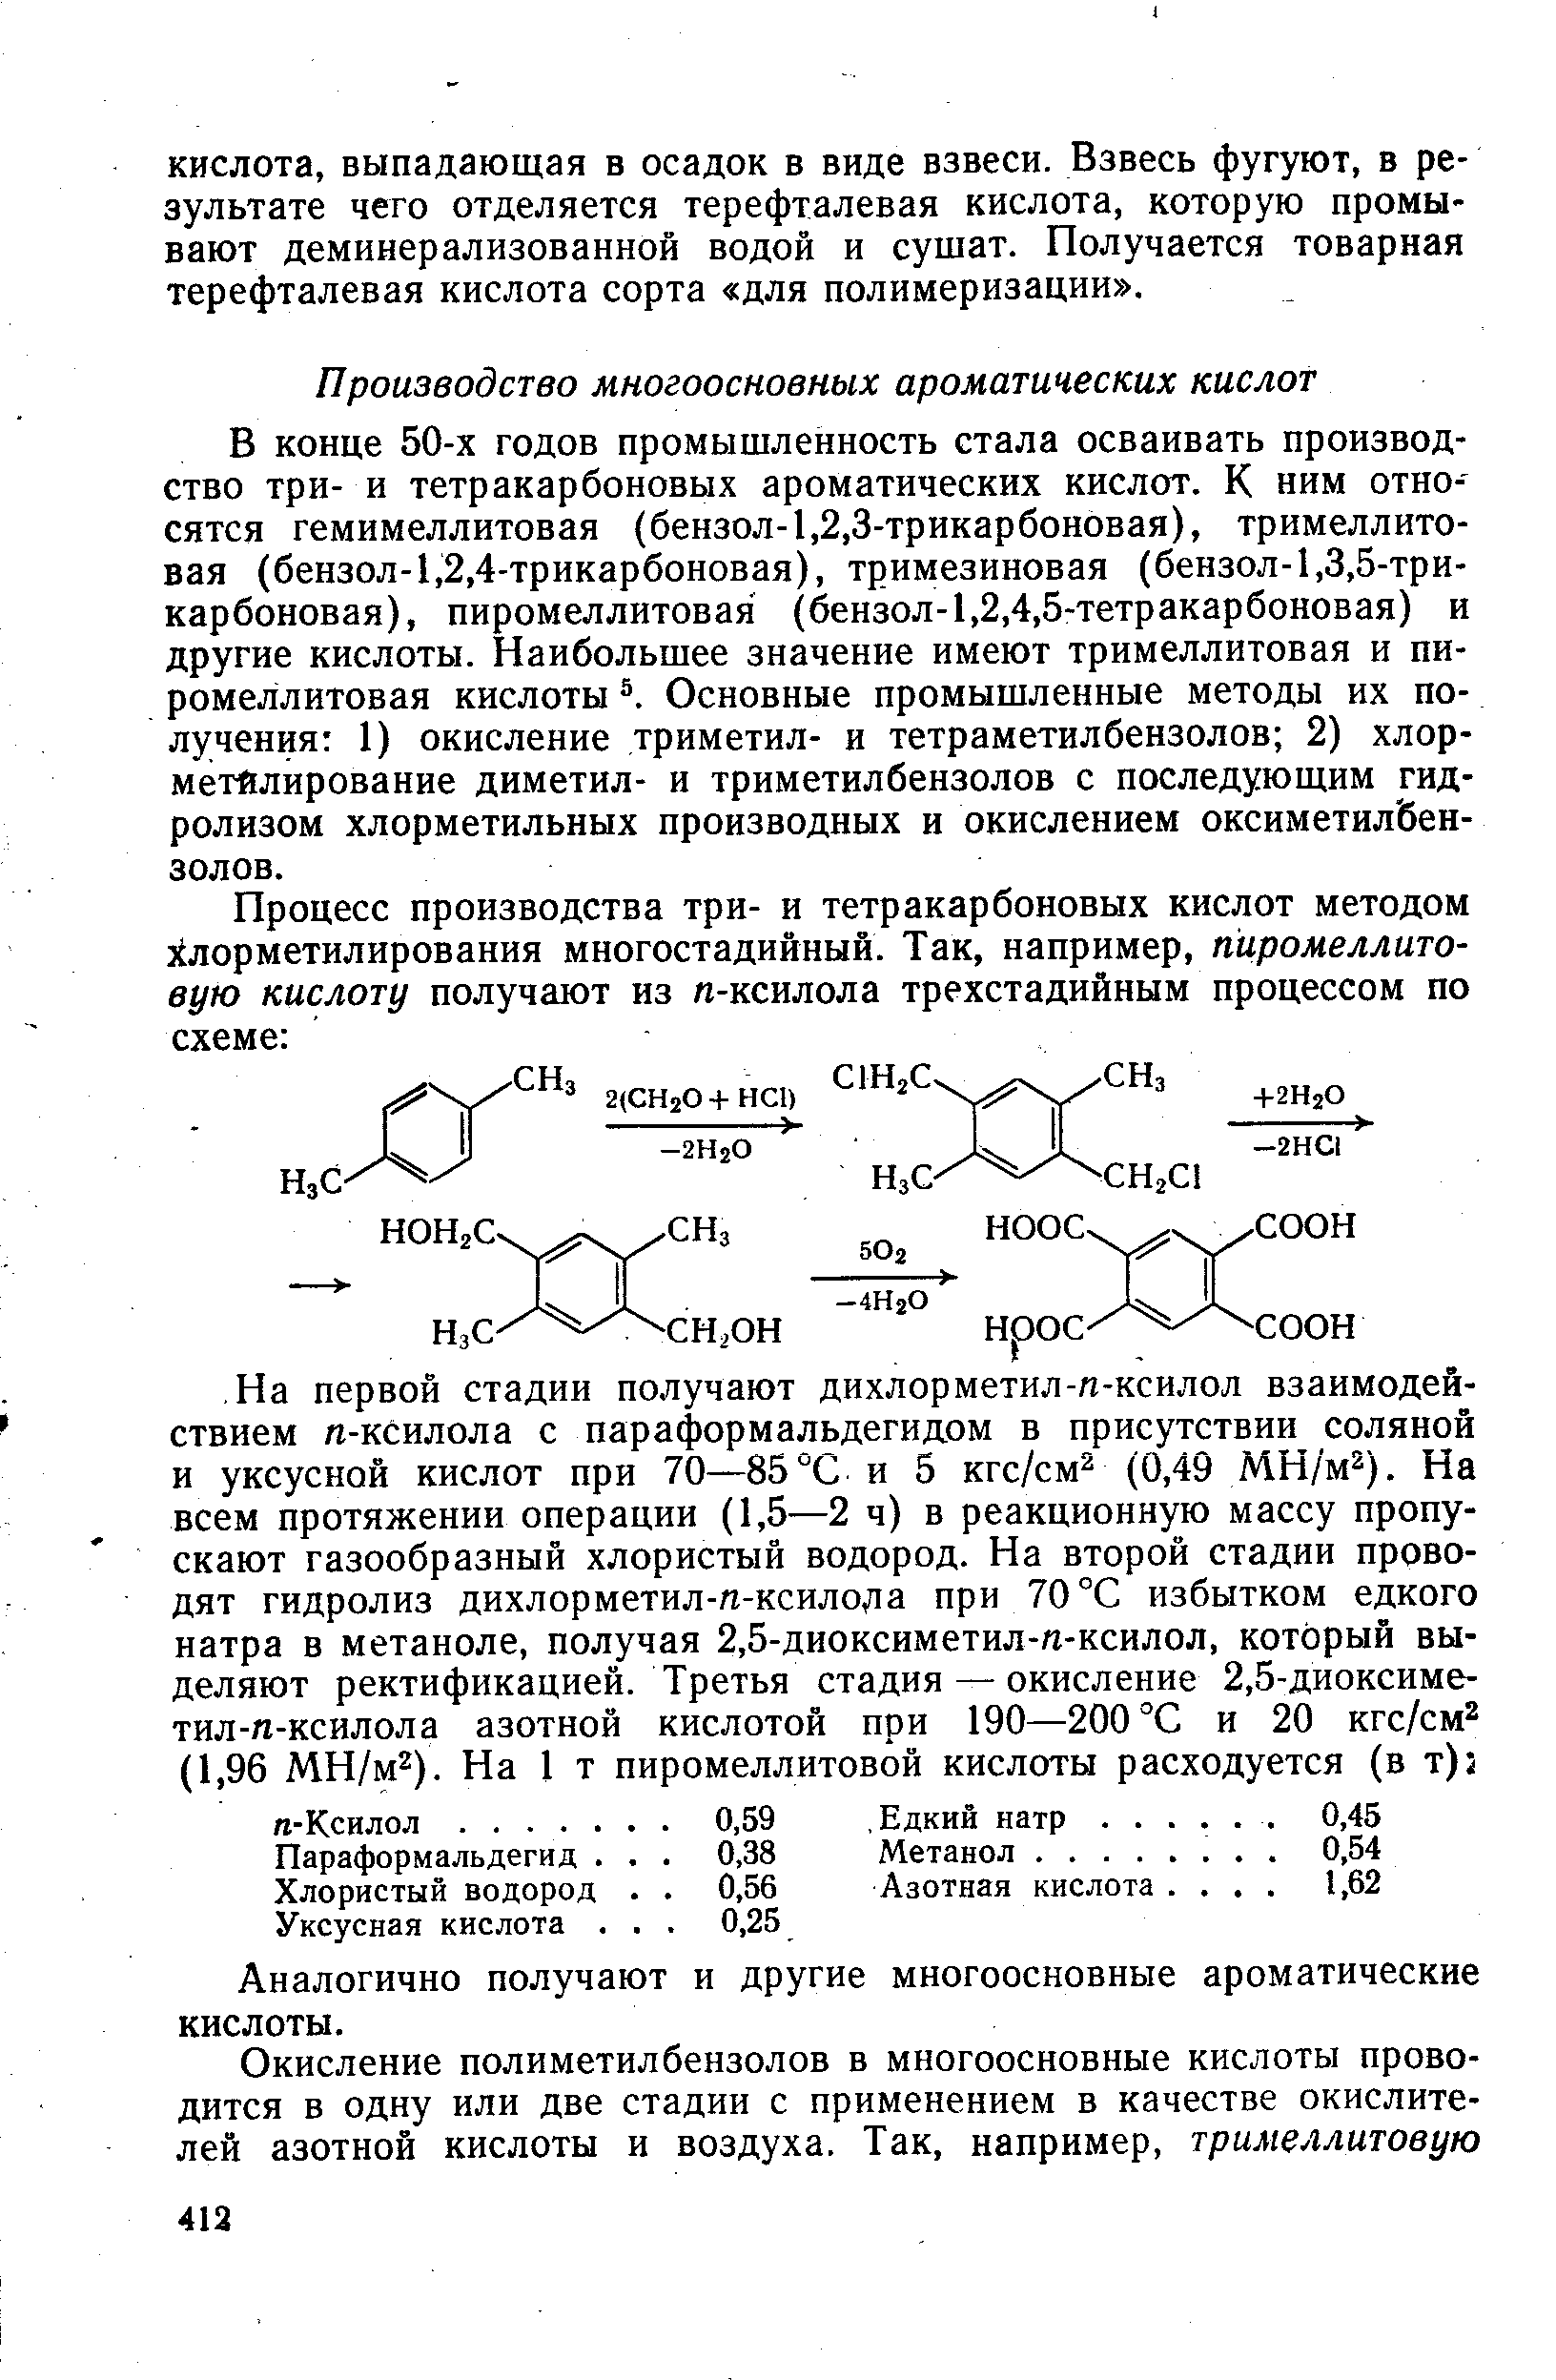 В конце 50-х годов промышленность стала осваивать производство три- и тетракарбоновых ароматических кислот. К ним относятся гемимеллитовая бензол-1,2,3-трикарбоновая), тримеллитовая (бензол-1,2,4-трикарбоновая), тримезиновая (бензол-1,3,5-три-карбоновая), пиромеллитовая (бензол-1,2,4,5-тетракарбоновая) и другие кислоты. Наибольшее значение имеют тримеллитовая и пиромеллитовая кислоты Основные промышленные методы их получения 1) окисление триметил- и тетраметилбензолов 2) хлор-метйлирование диметил- и триметилбензолов с последующим гидролизом хлорметильных производных и окислением оксиметил бен-золов.